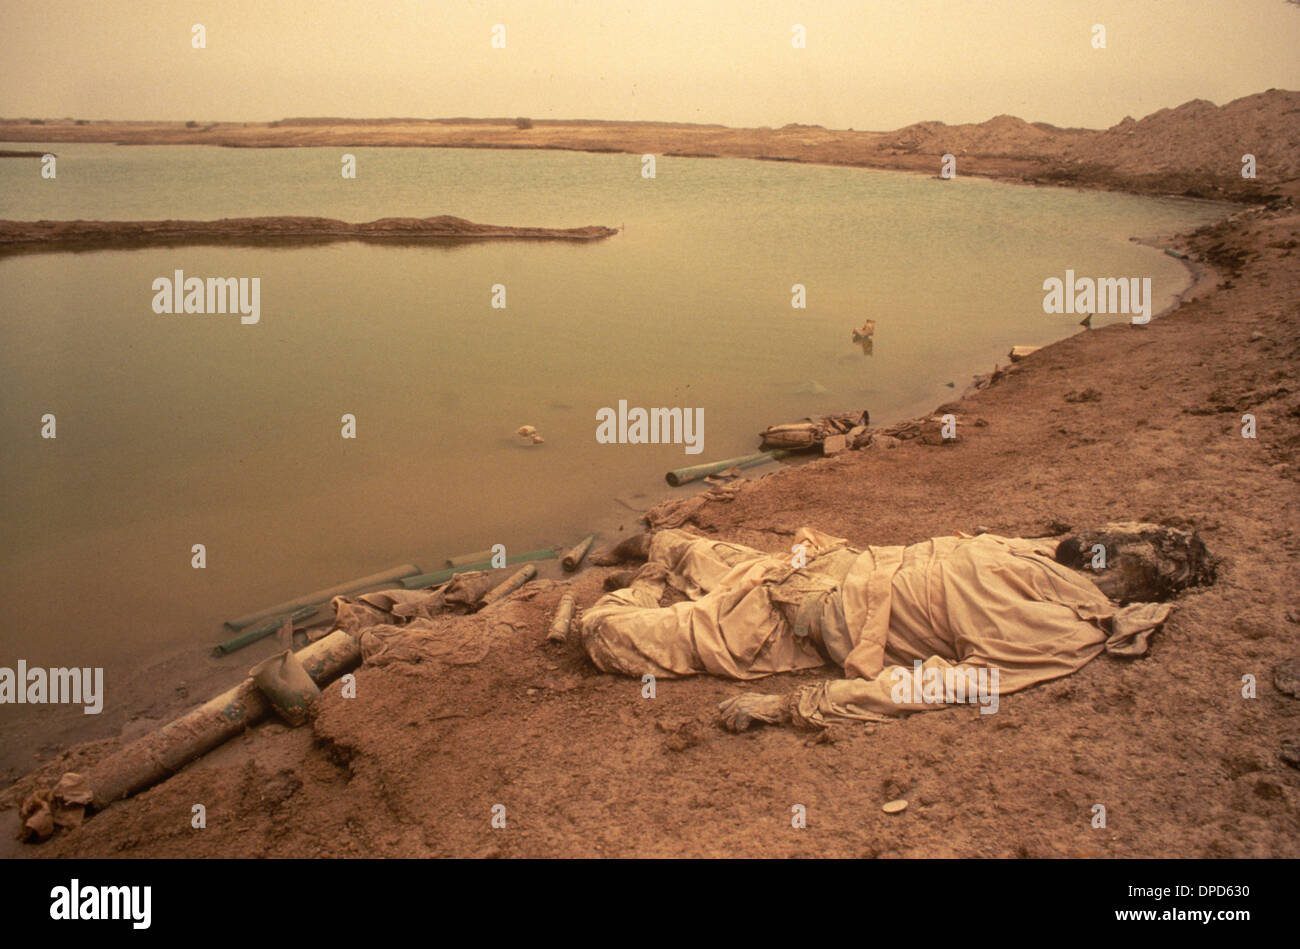 Iran guerre en Irak également connue sous le nom de première Guerre du Golfe persique ou Guerre du Golfe 1984. Un soldat mort dans les marais mésopotamiens. Une tempête de sable dans l'air. Près de Basra, dans le sud de l'Irak. HOMER SYKES des années 1980 Banque D'Images